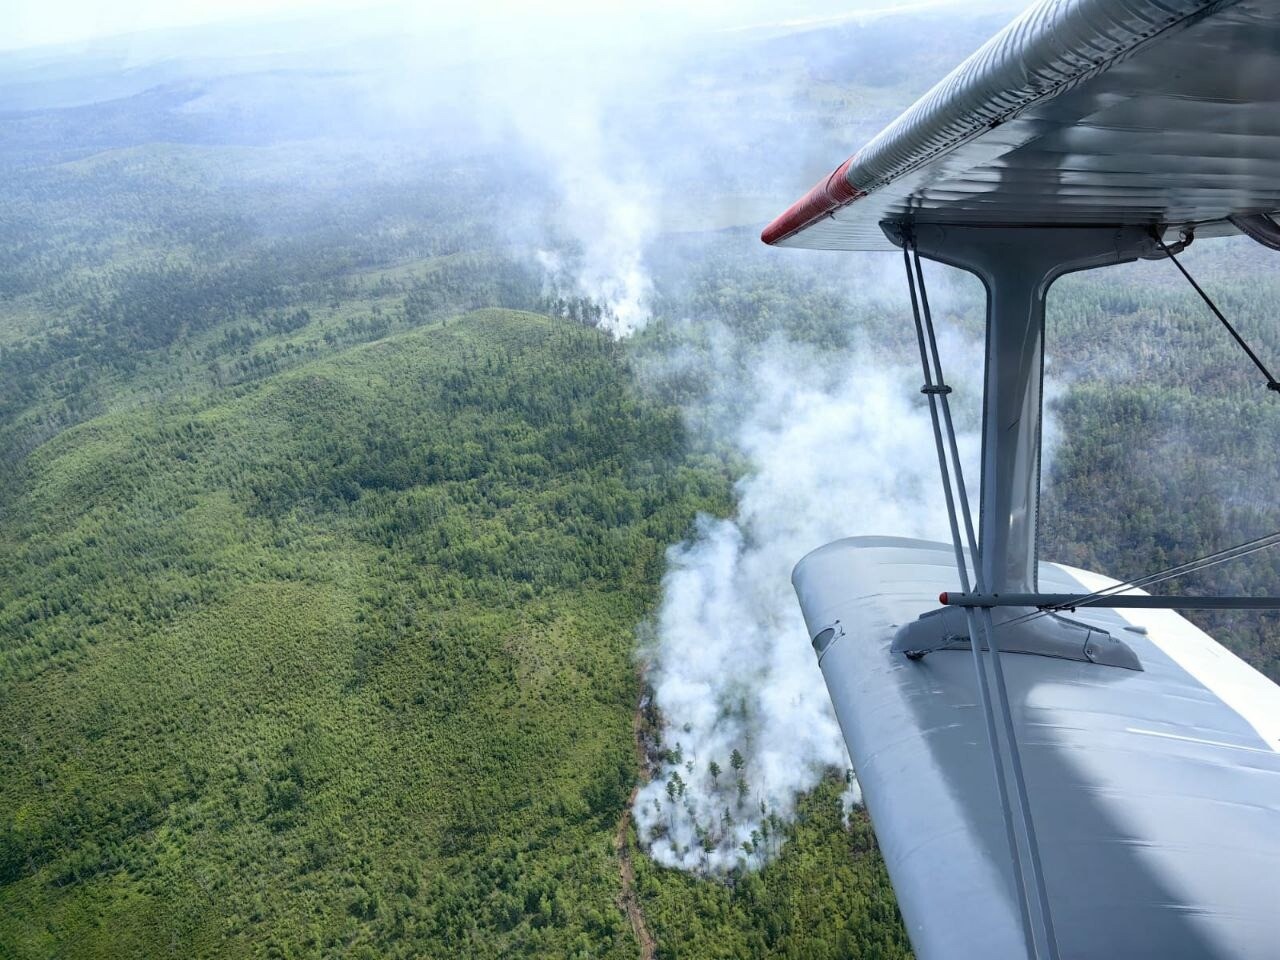 Режим ЧС в лесах введен в Селемджинском районе Приамурья из-за природных пожаров